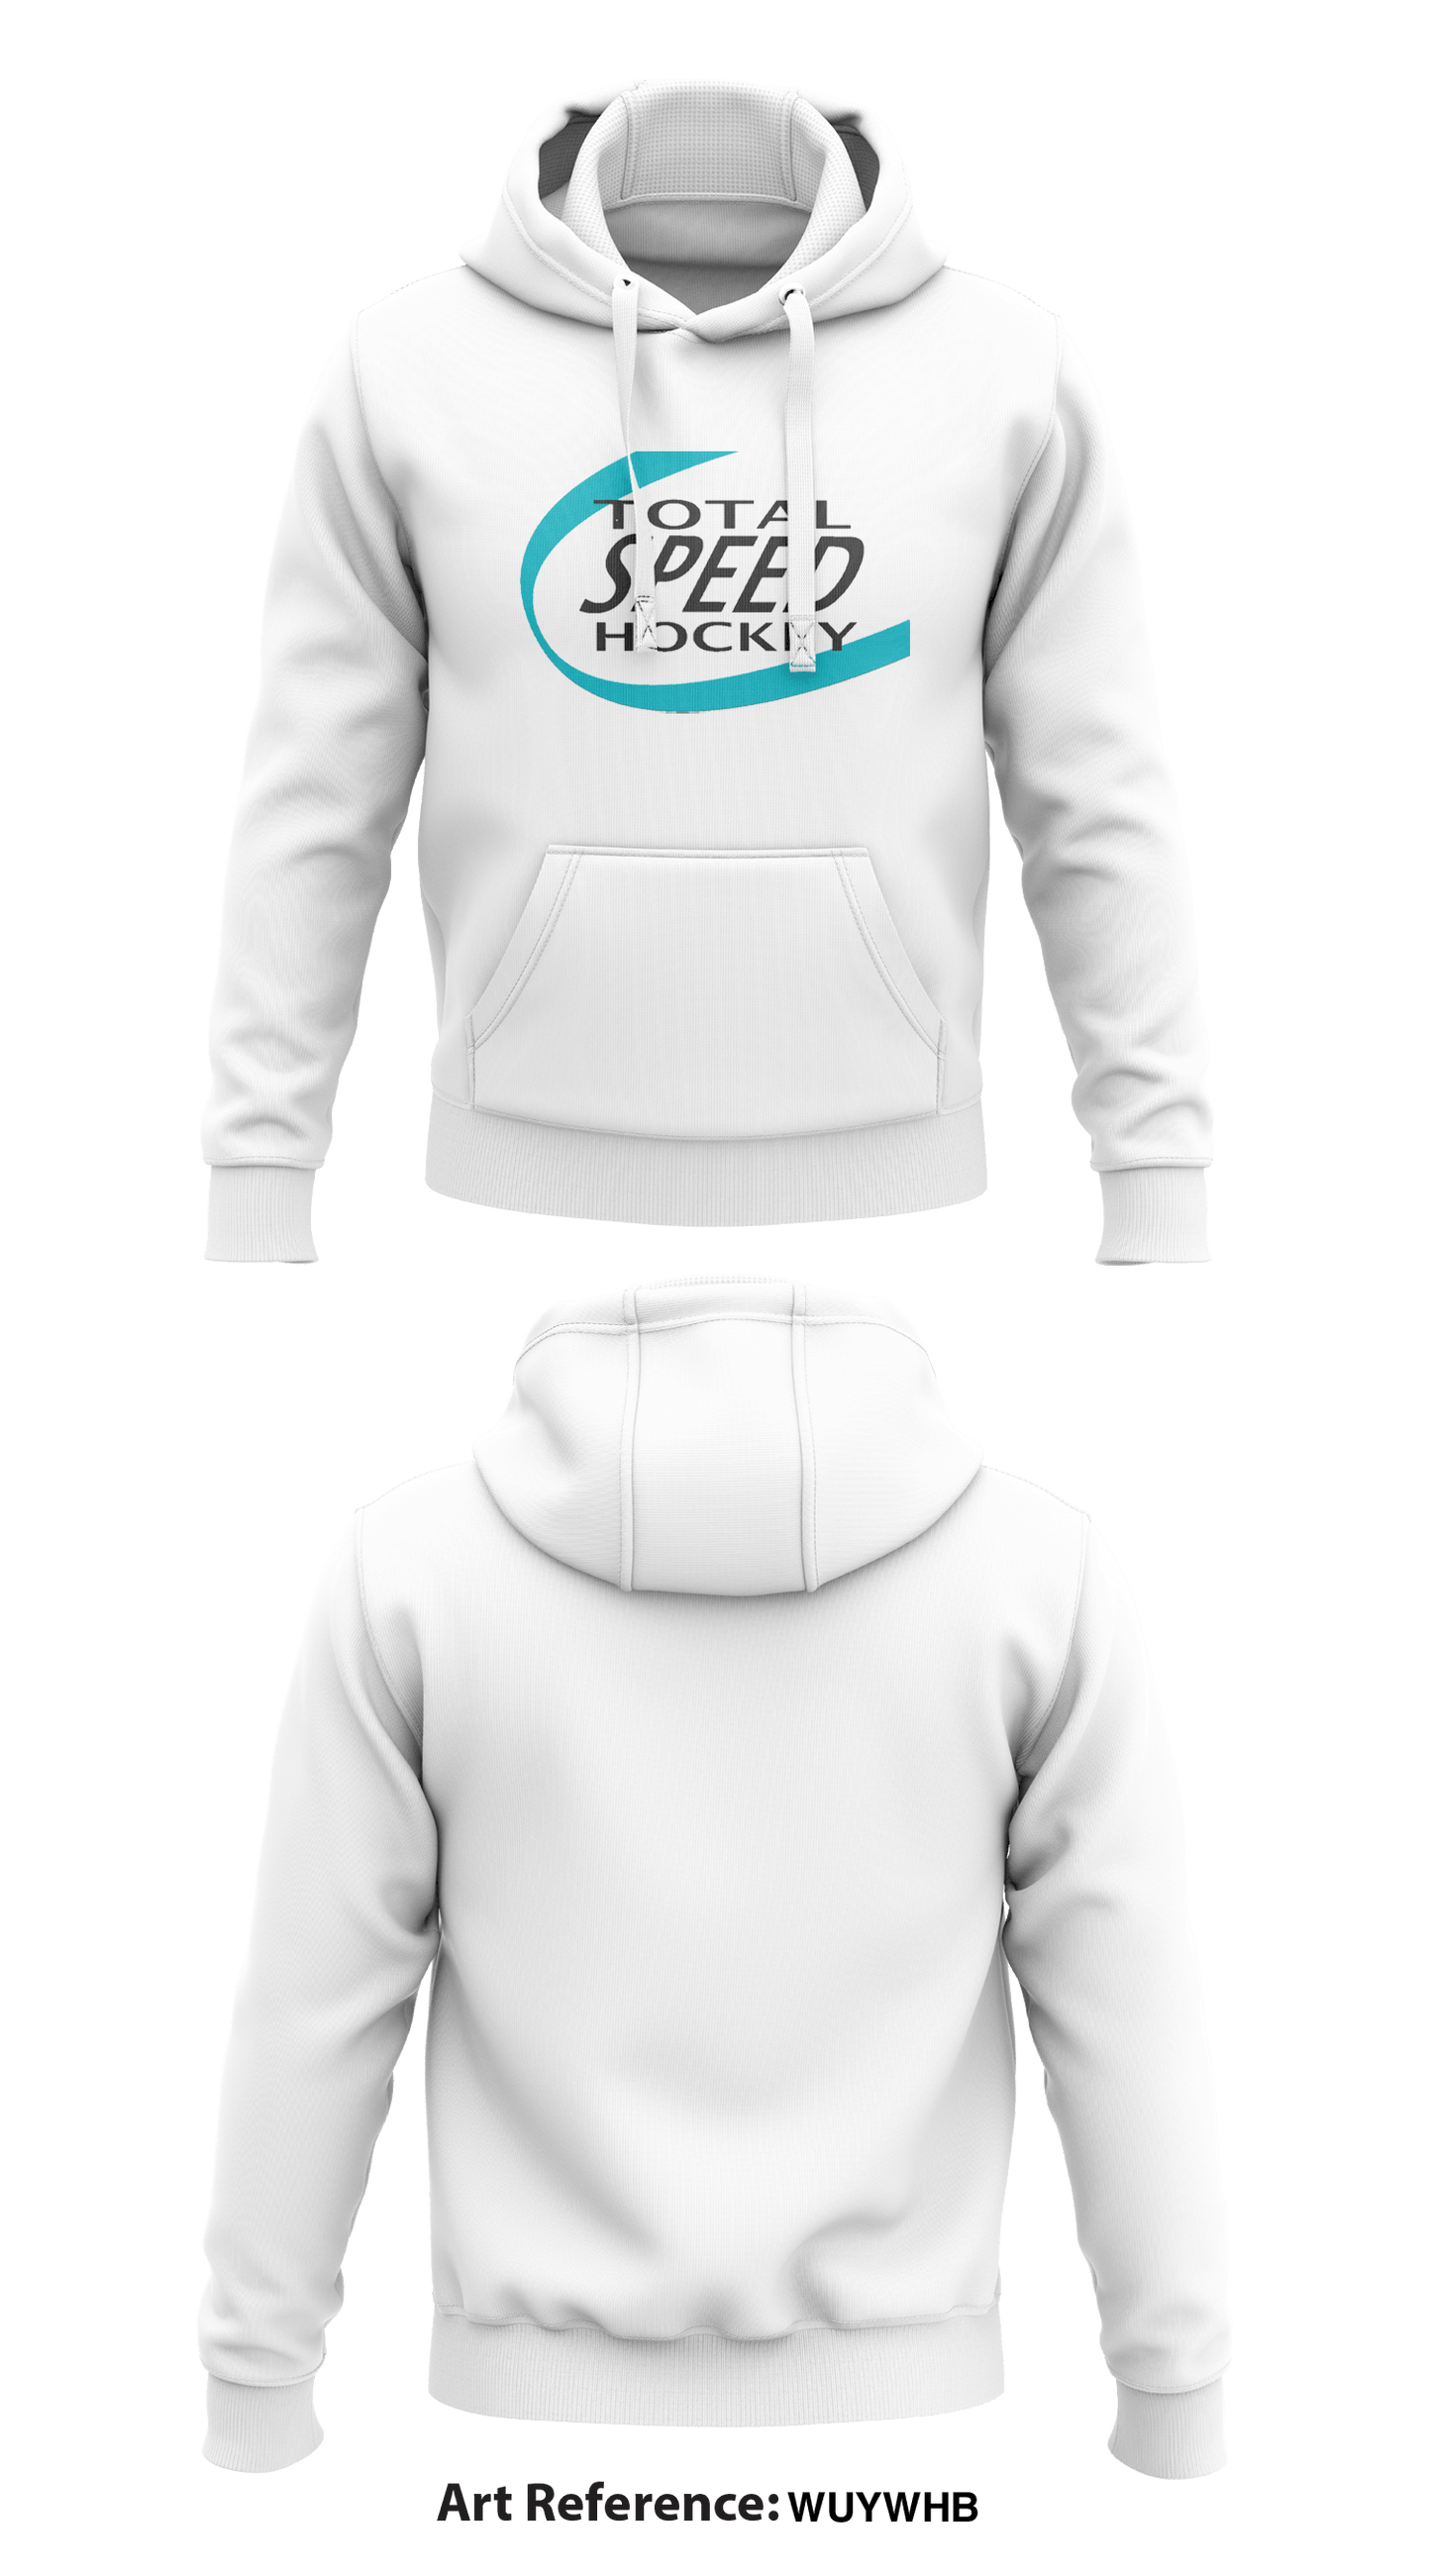 Total Speed Hockey Store 1  Core Men's Hooded Performance Sweatshirt - WUYwhb